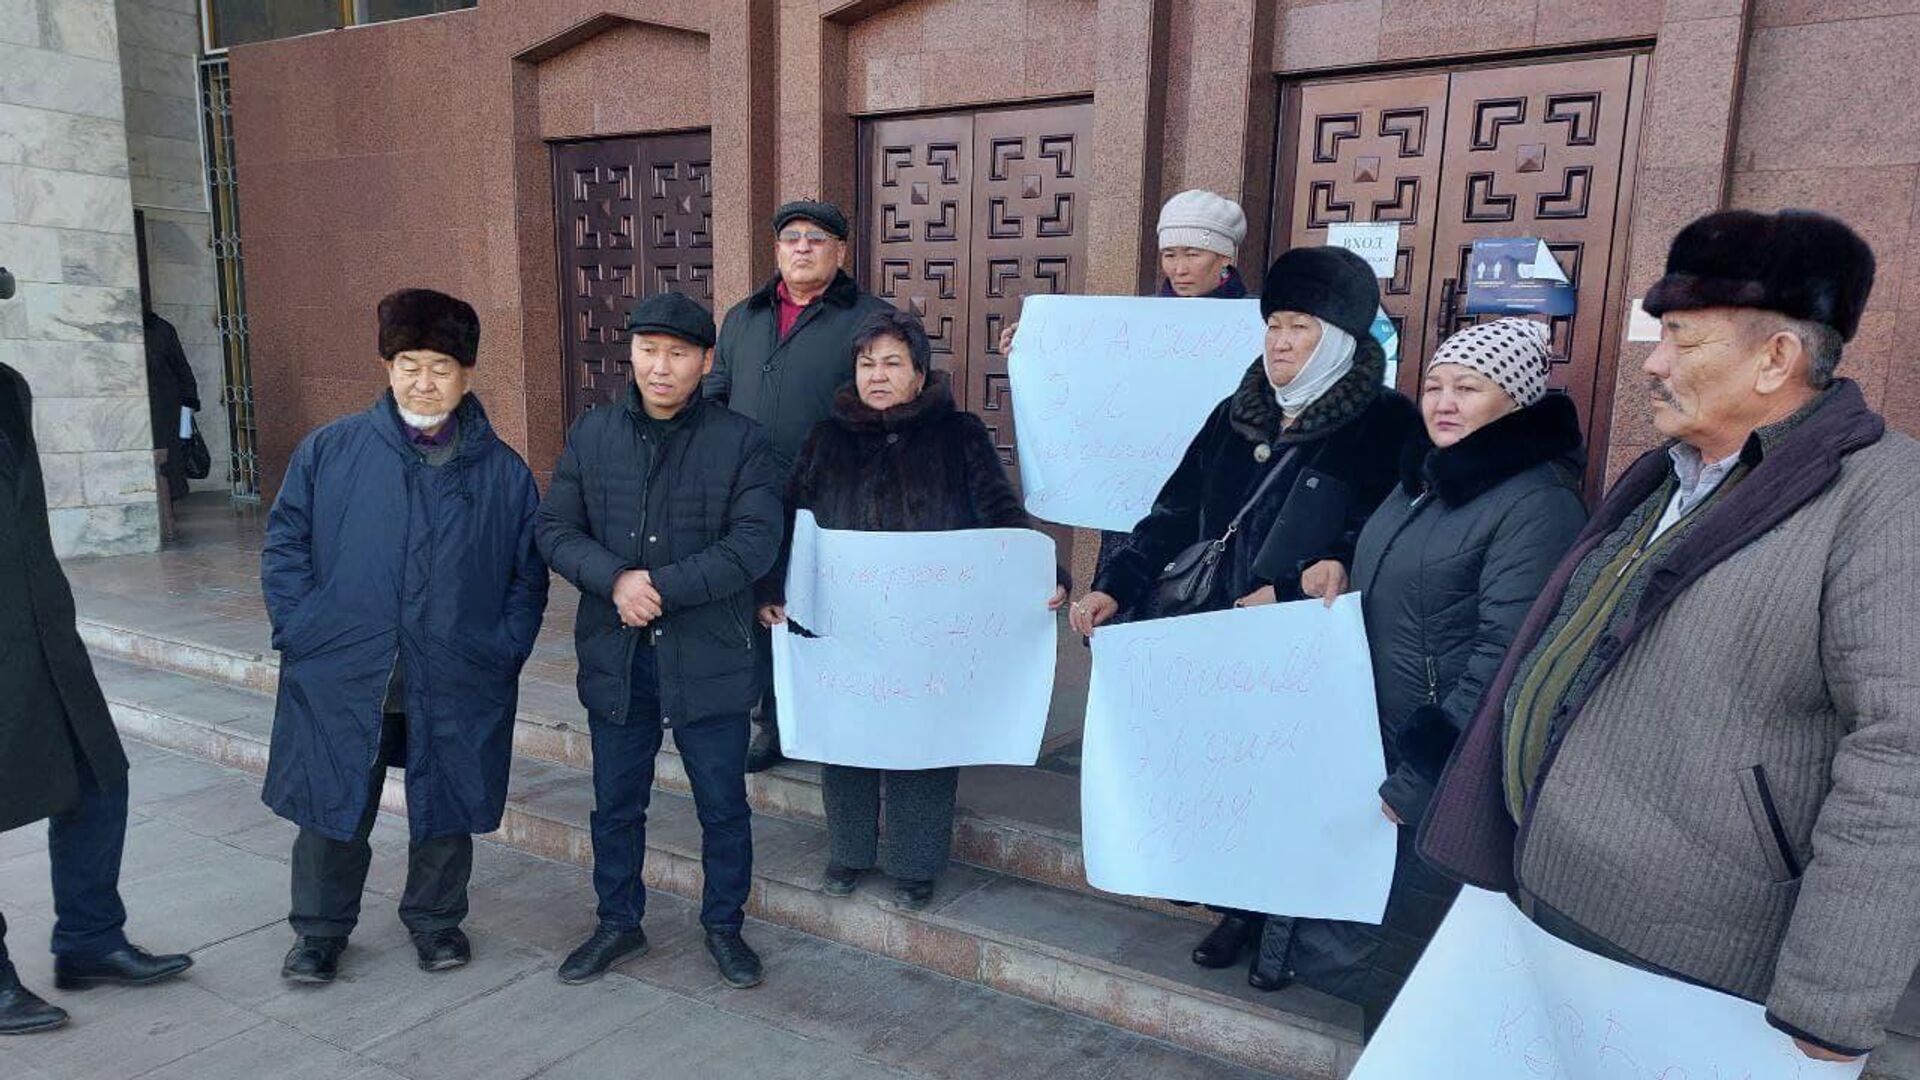 Митинг в поддержку Шаирбека Ташиева  у здания парламента в Бишкеке - Sputnik Кыргызстан, 1920, 26.01.2022